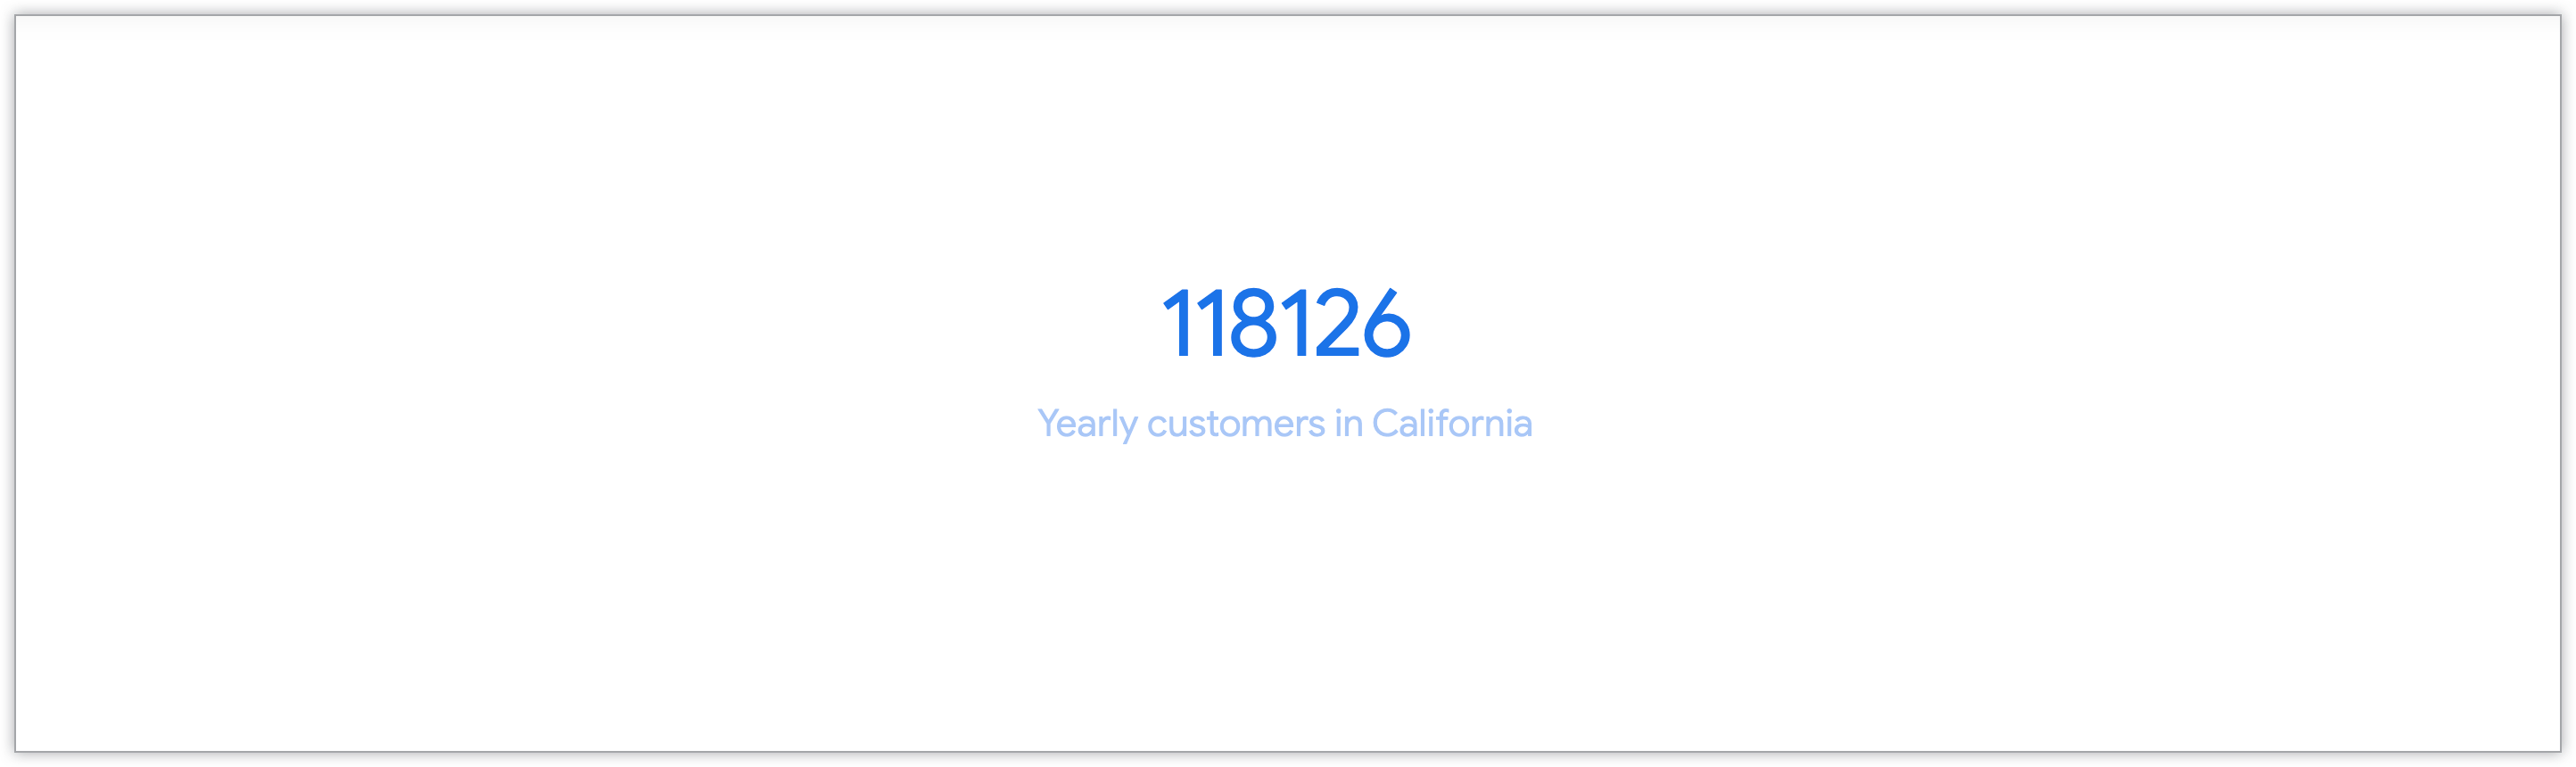 Gráfico de un solo valor que muestra la cantidad de clientes anuales de California.